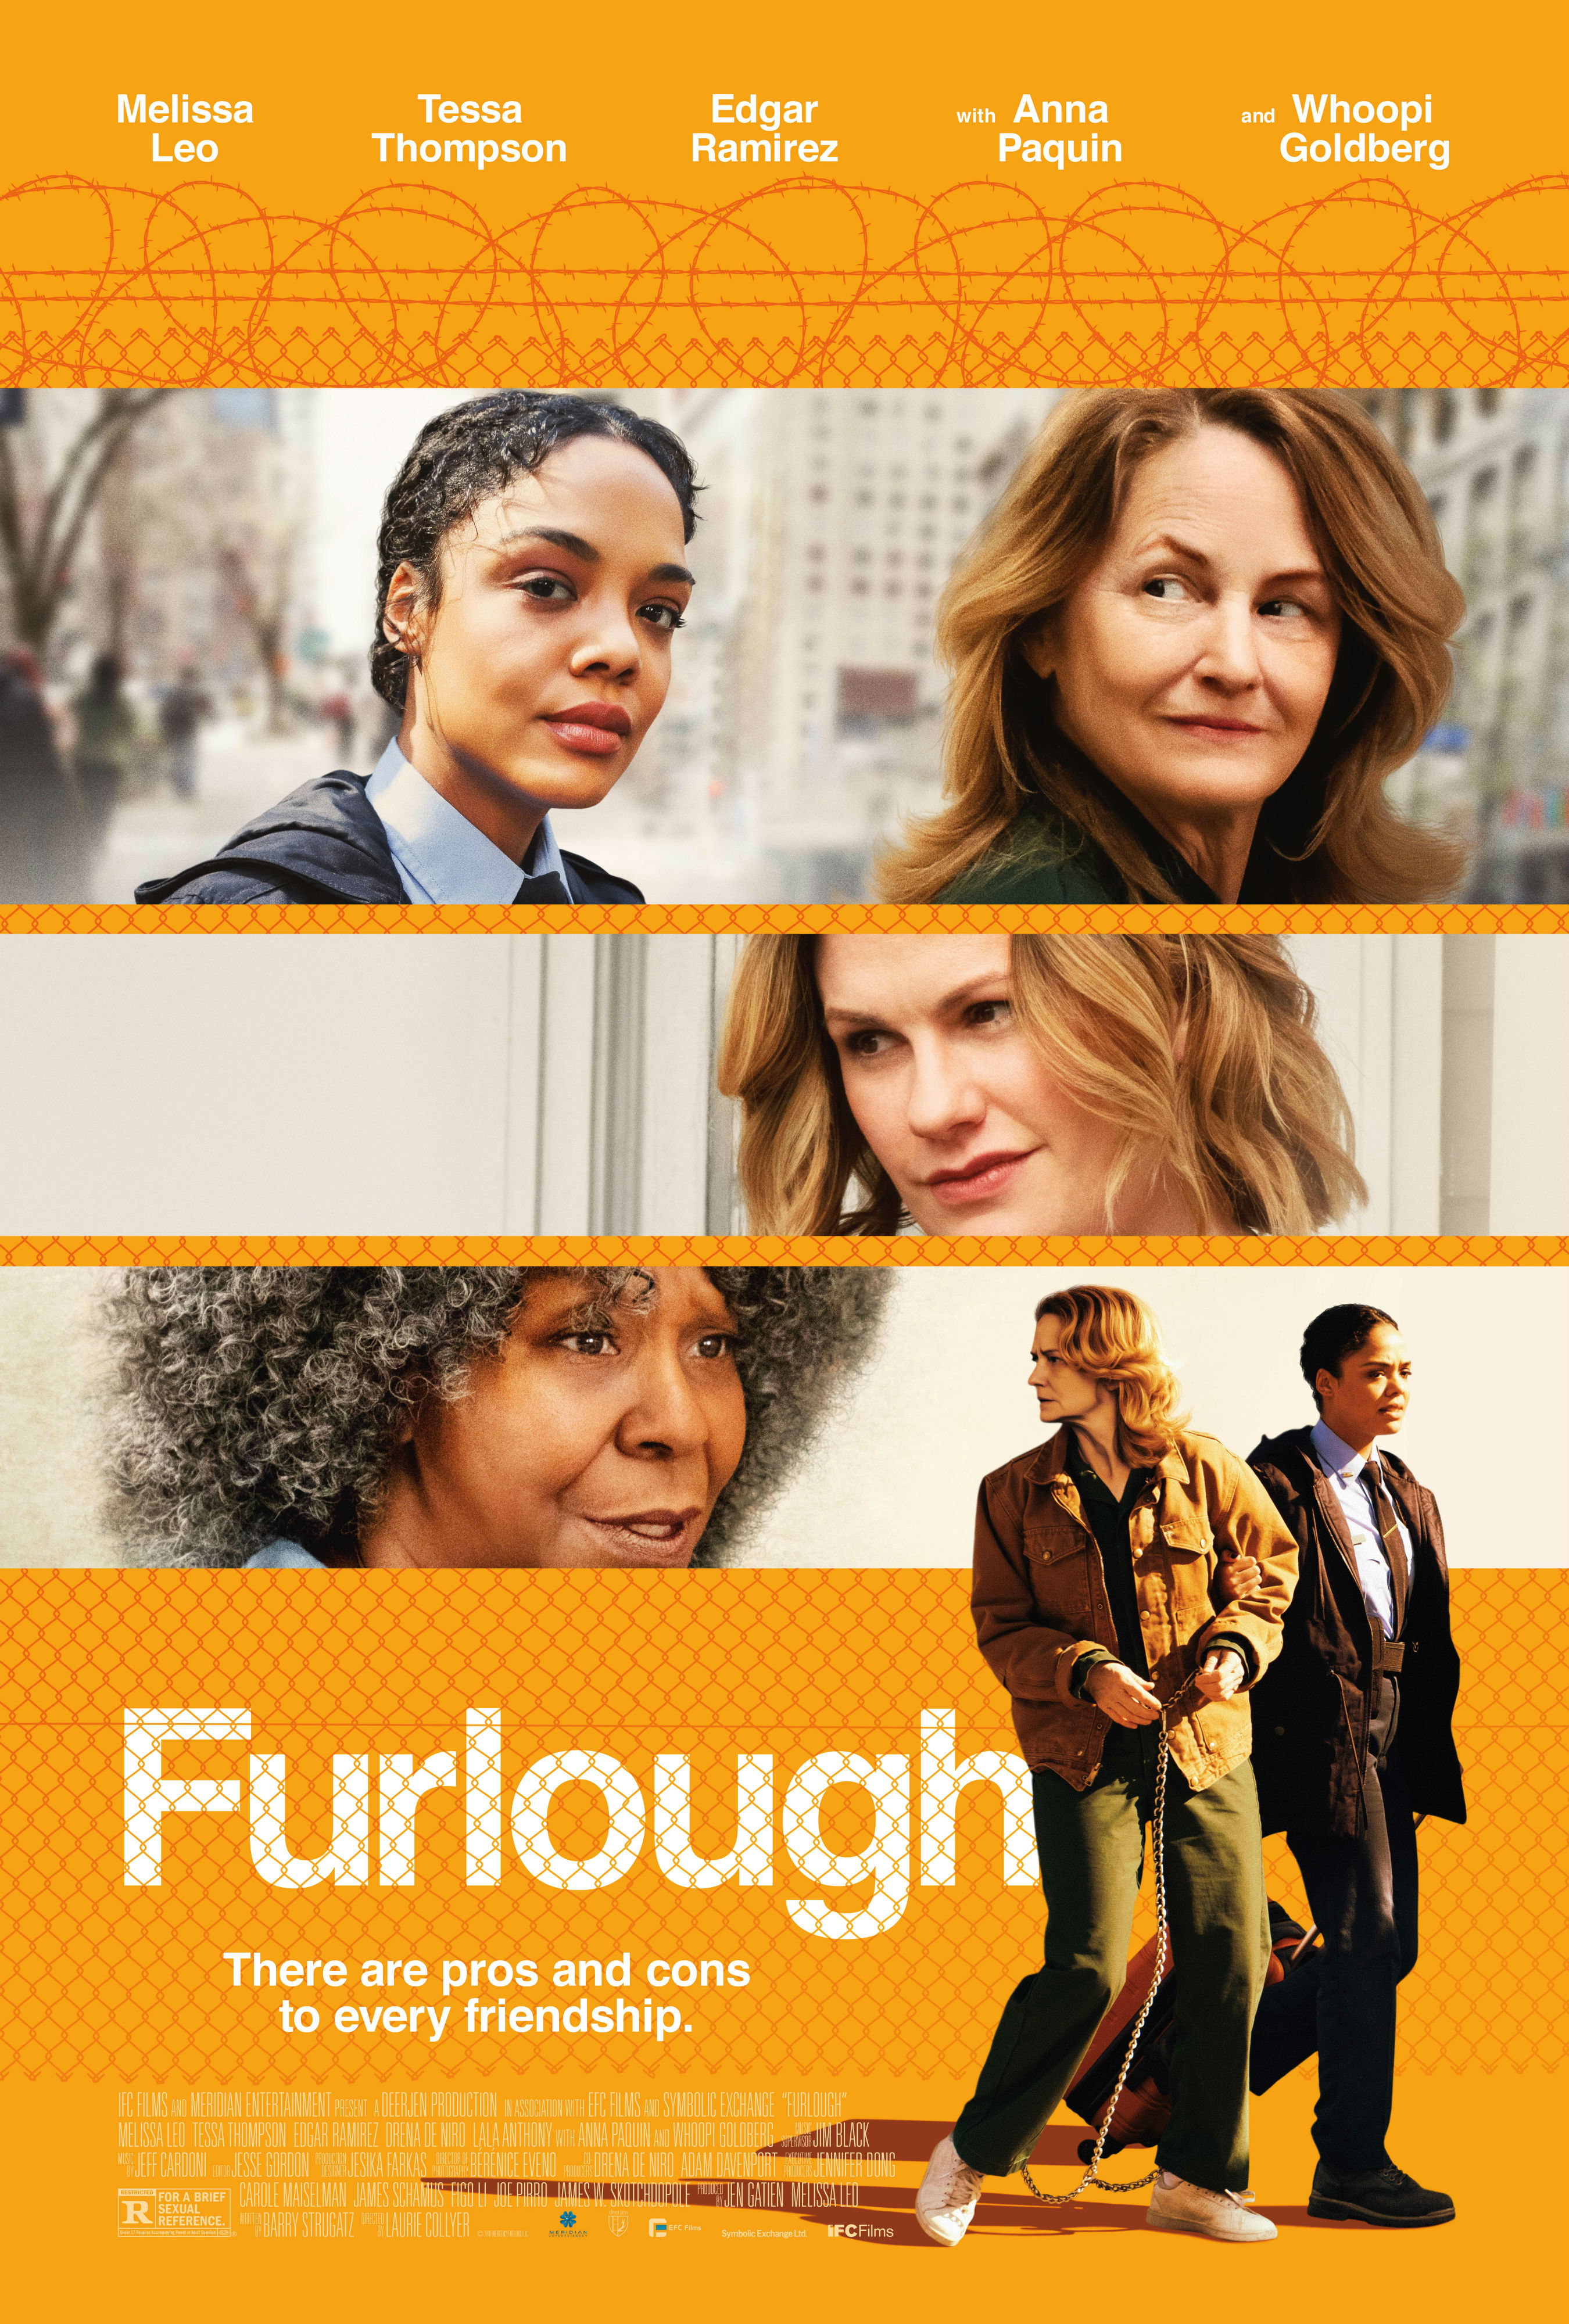 Nonton film Furlough layarkaca21 indoxx1 ganool online streaming terbaru